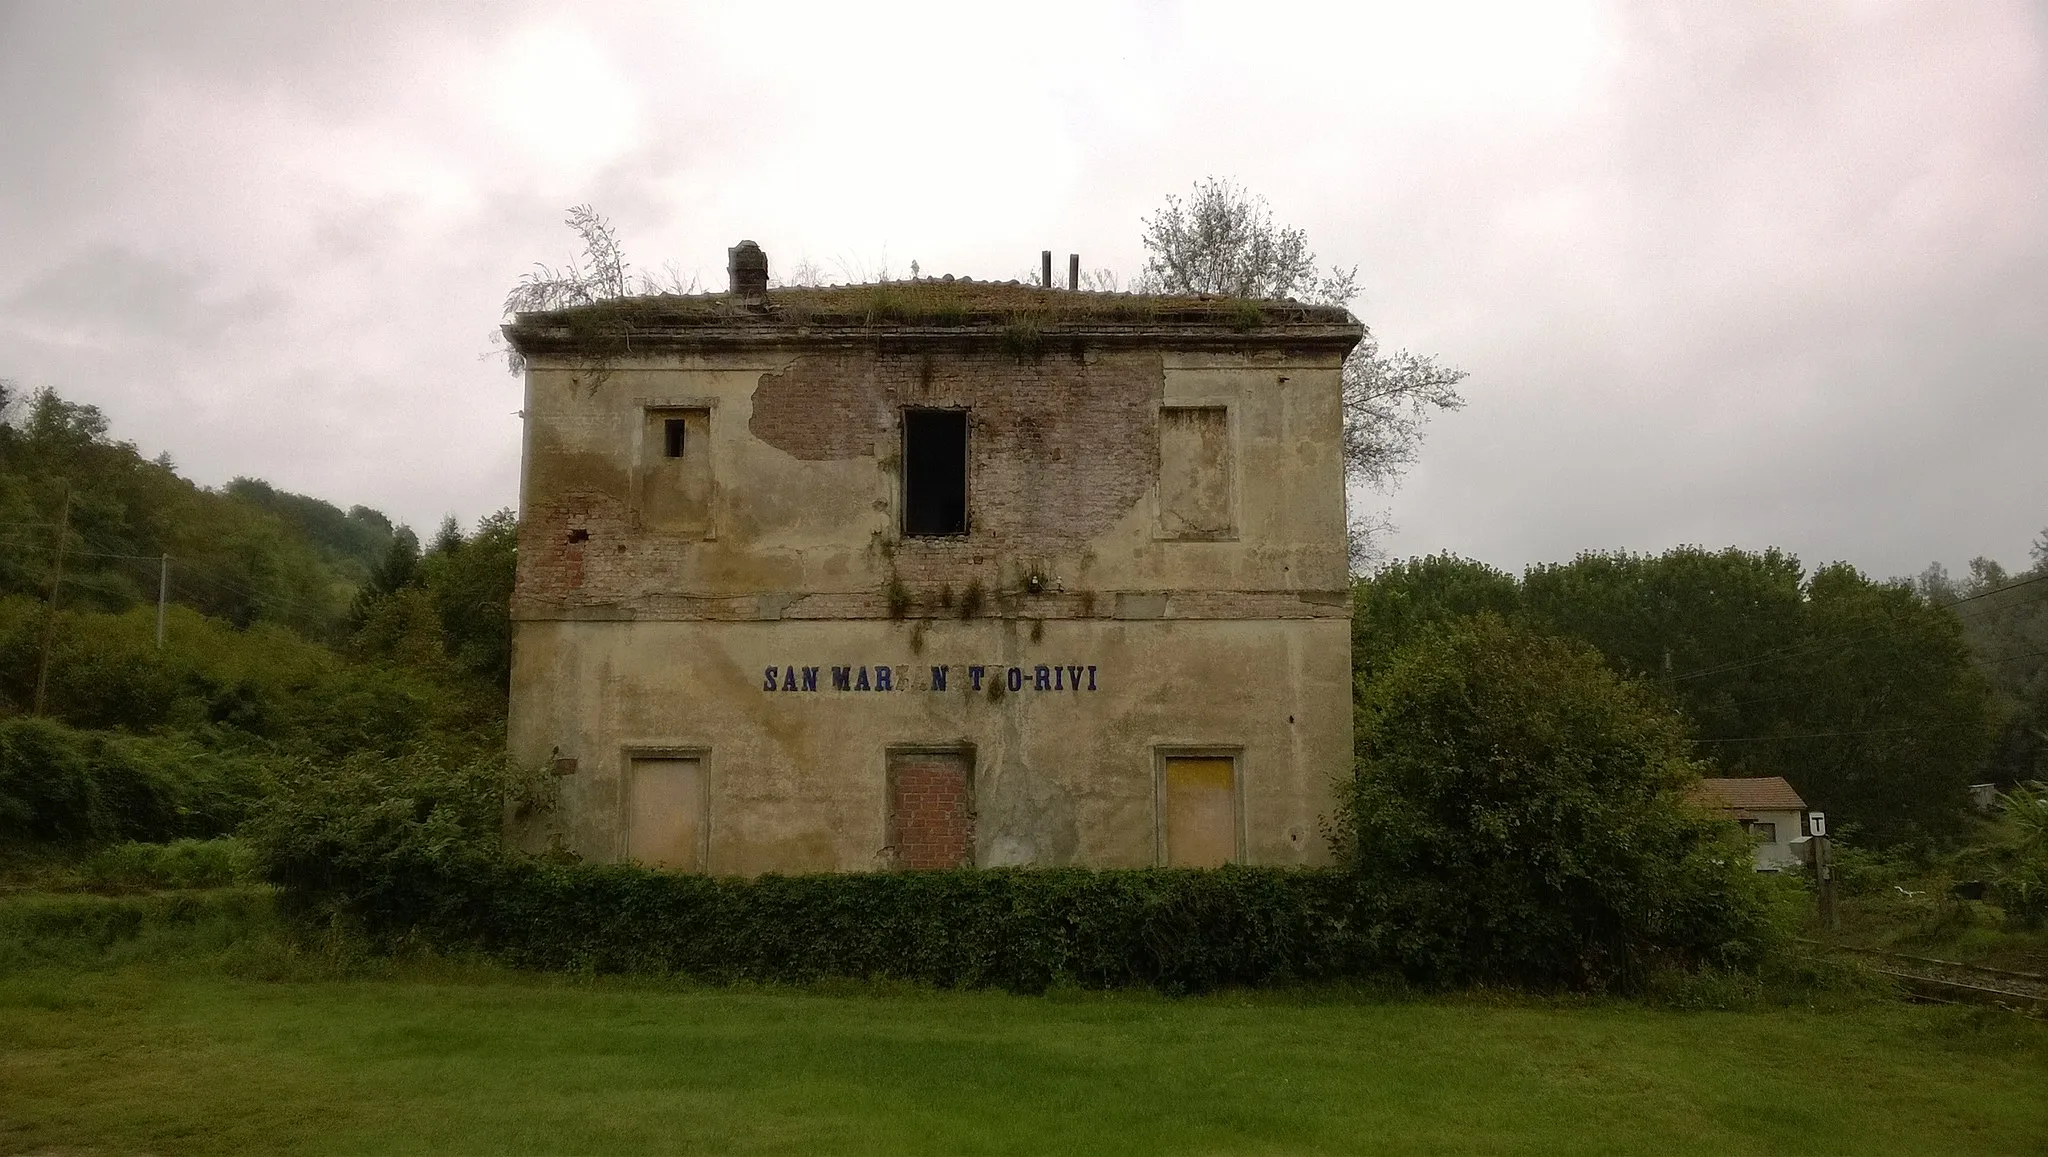 Photo showing: La stazione abbandonata di San Marzanotto Rivi (Asti, Italia) lungo la ferrovia Asti-Genova.